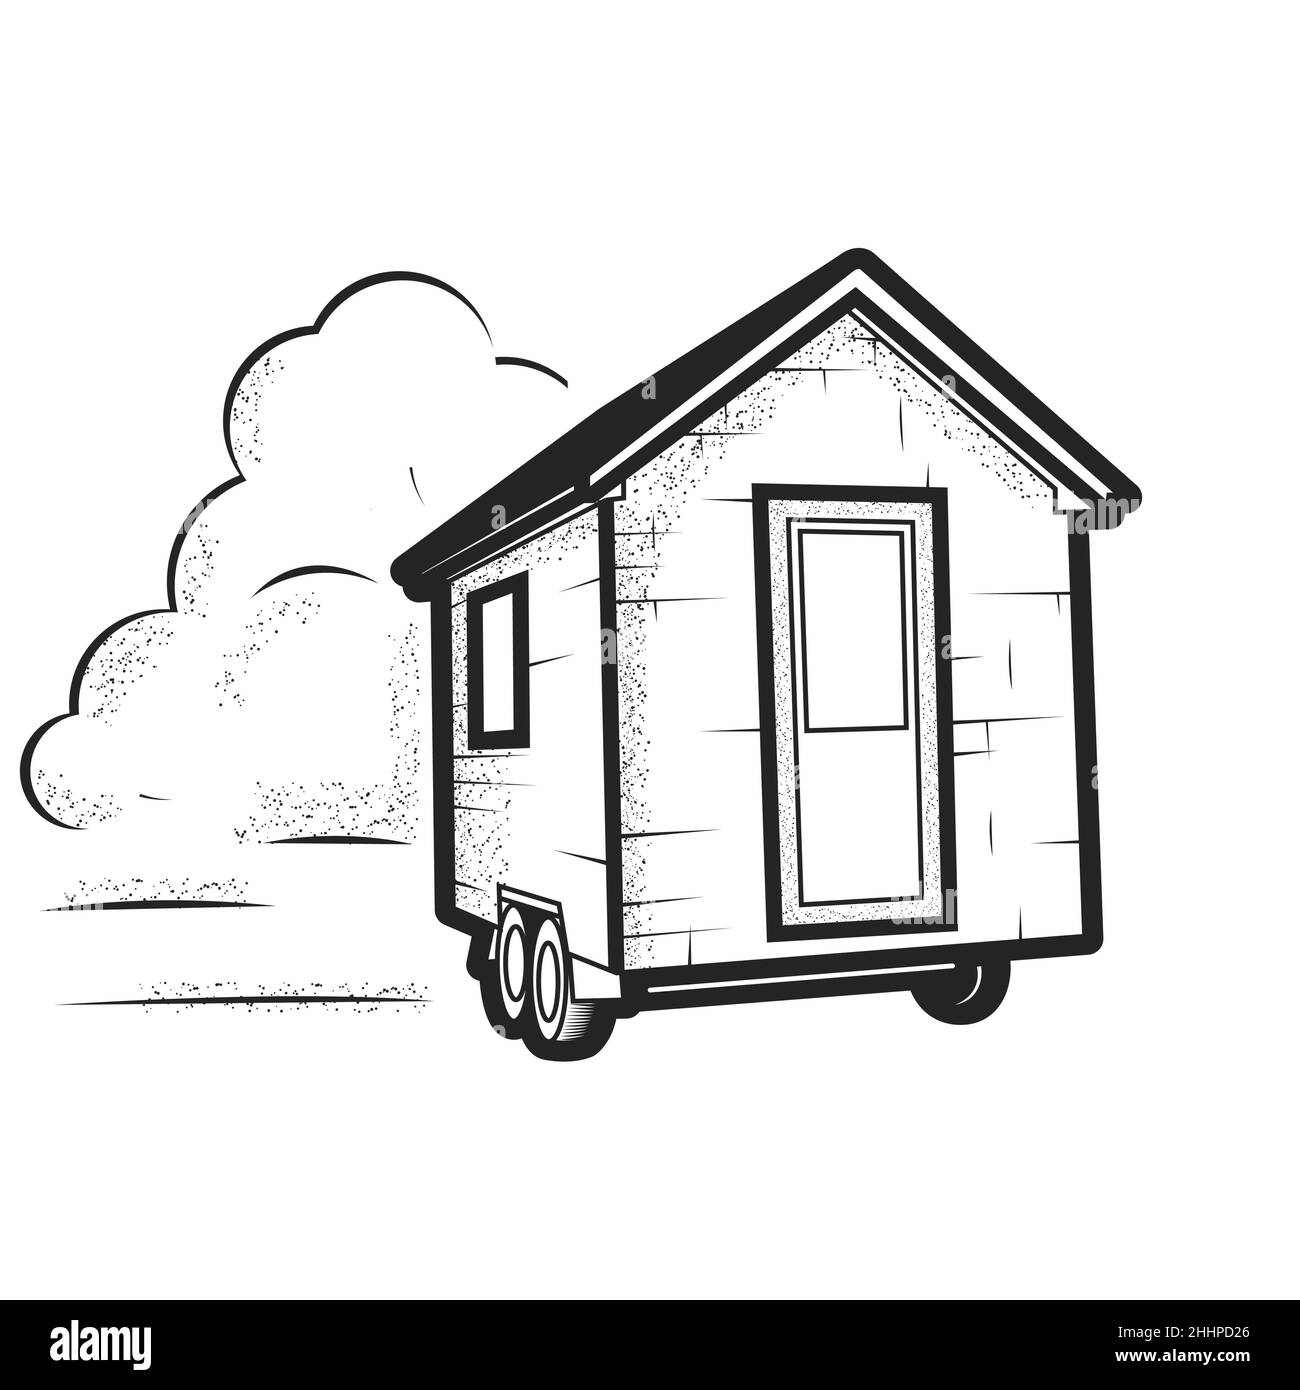 Kleines, winziges Haus auf Rädern, Anhängerhütte, fahrbare kleine Kabine, Vektor Stock Vektor